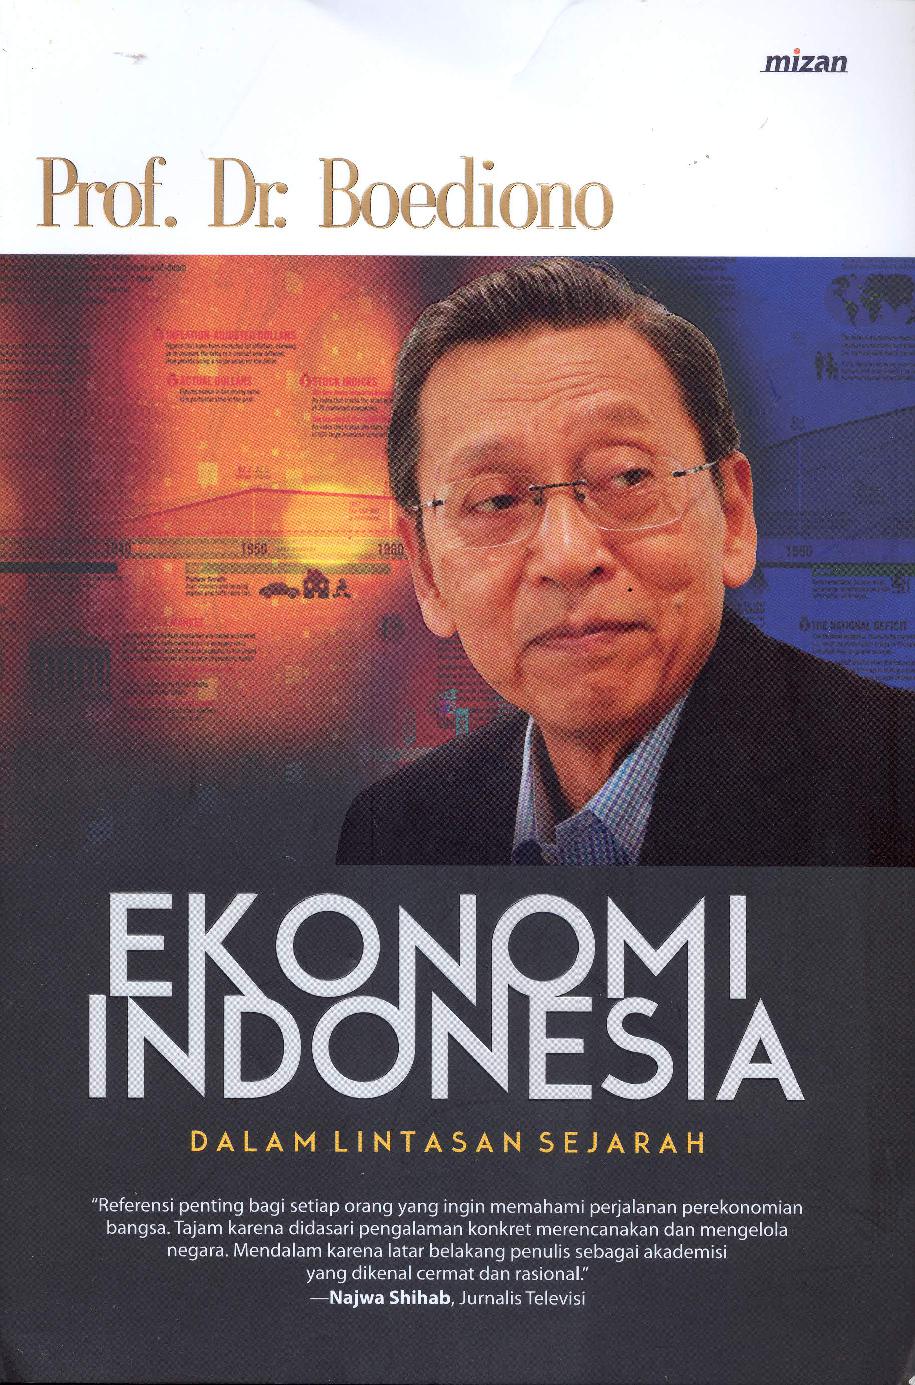 Ekonomi Indonesia dalam lintasan sejarah